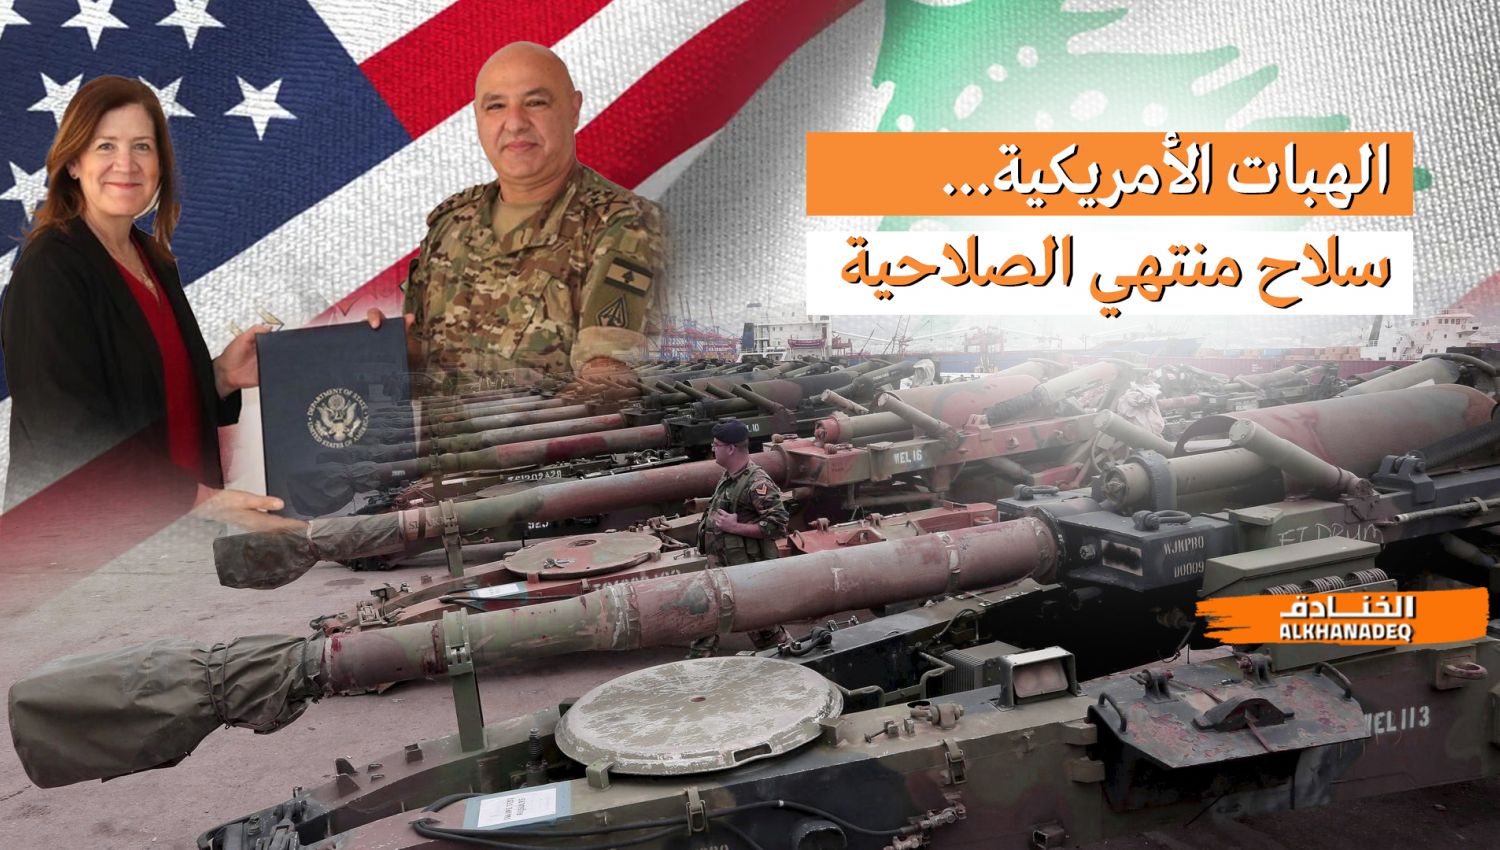 واشنطن تبتز الجيش اللبناني بسلاحٍ قديم خارج الخدمة!